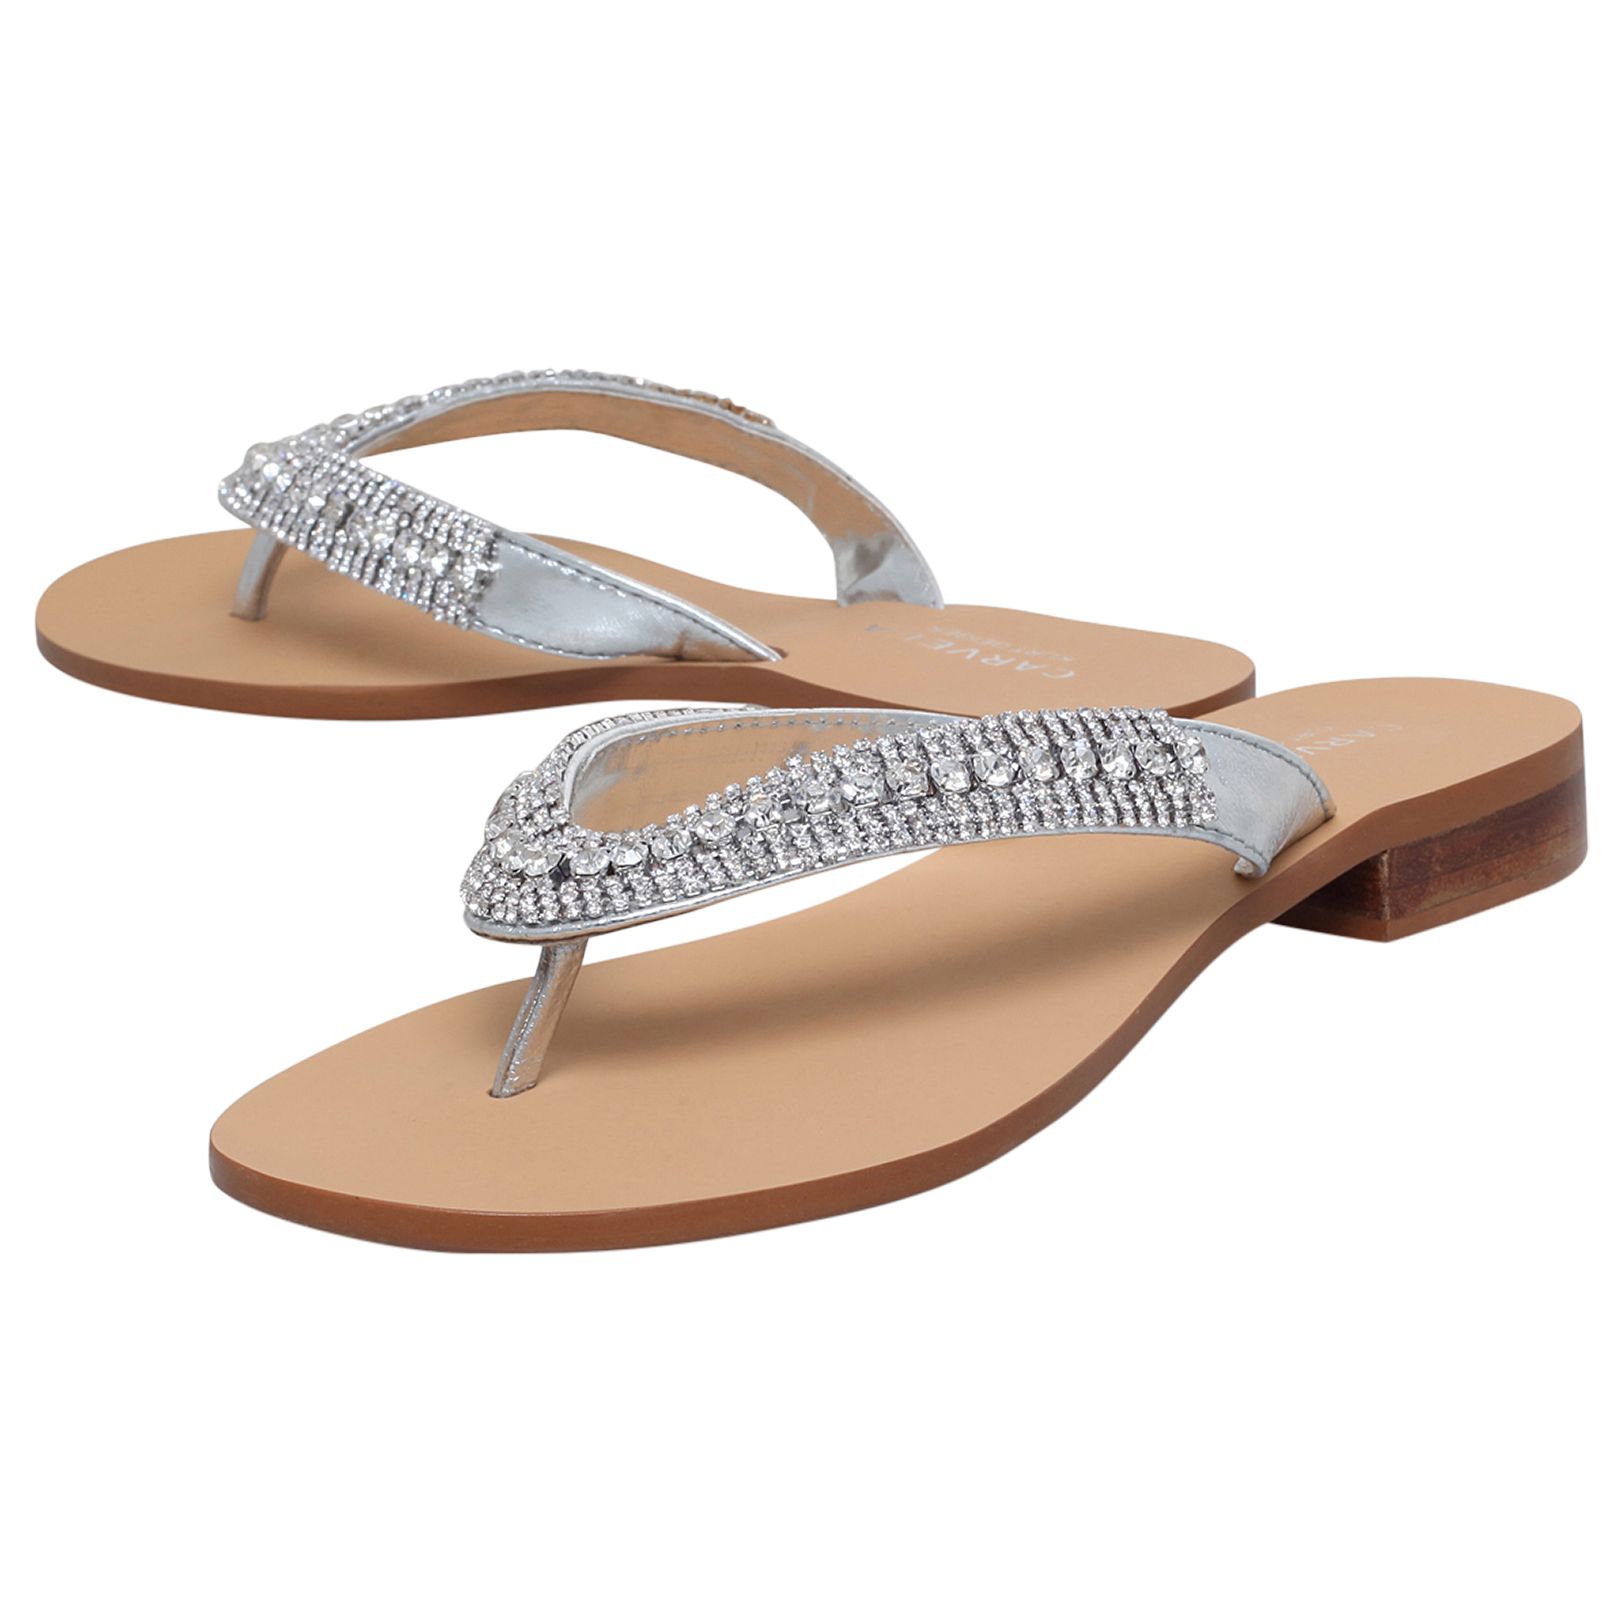 Carvela Breanne 2 Embellished Flat Sandals, Silver Leather